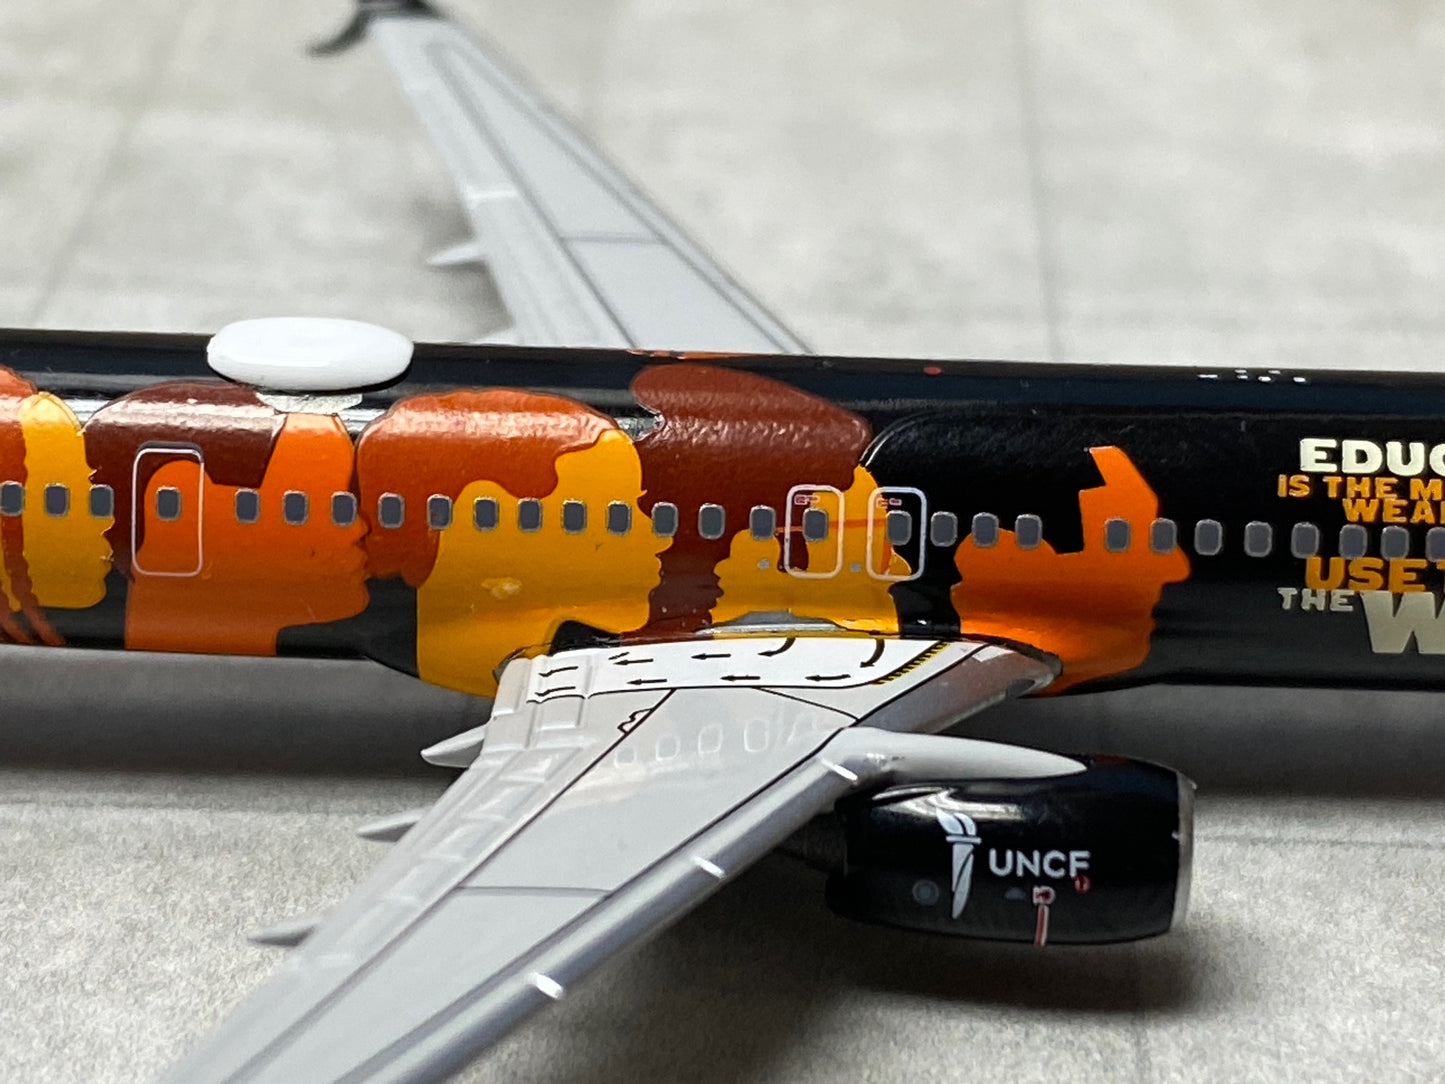 1/400 Alaska Airlines B 737-900ER "UNCF - Education Change the World" NG Models 79003 *Multiple paint chips on fuselage*